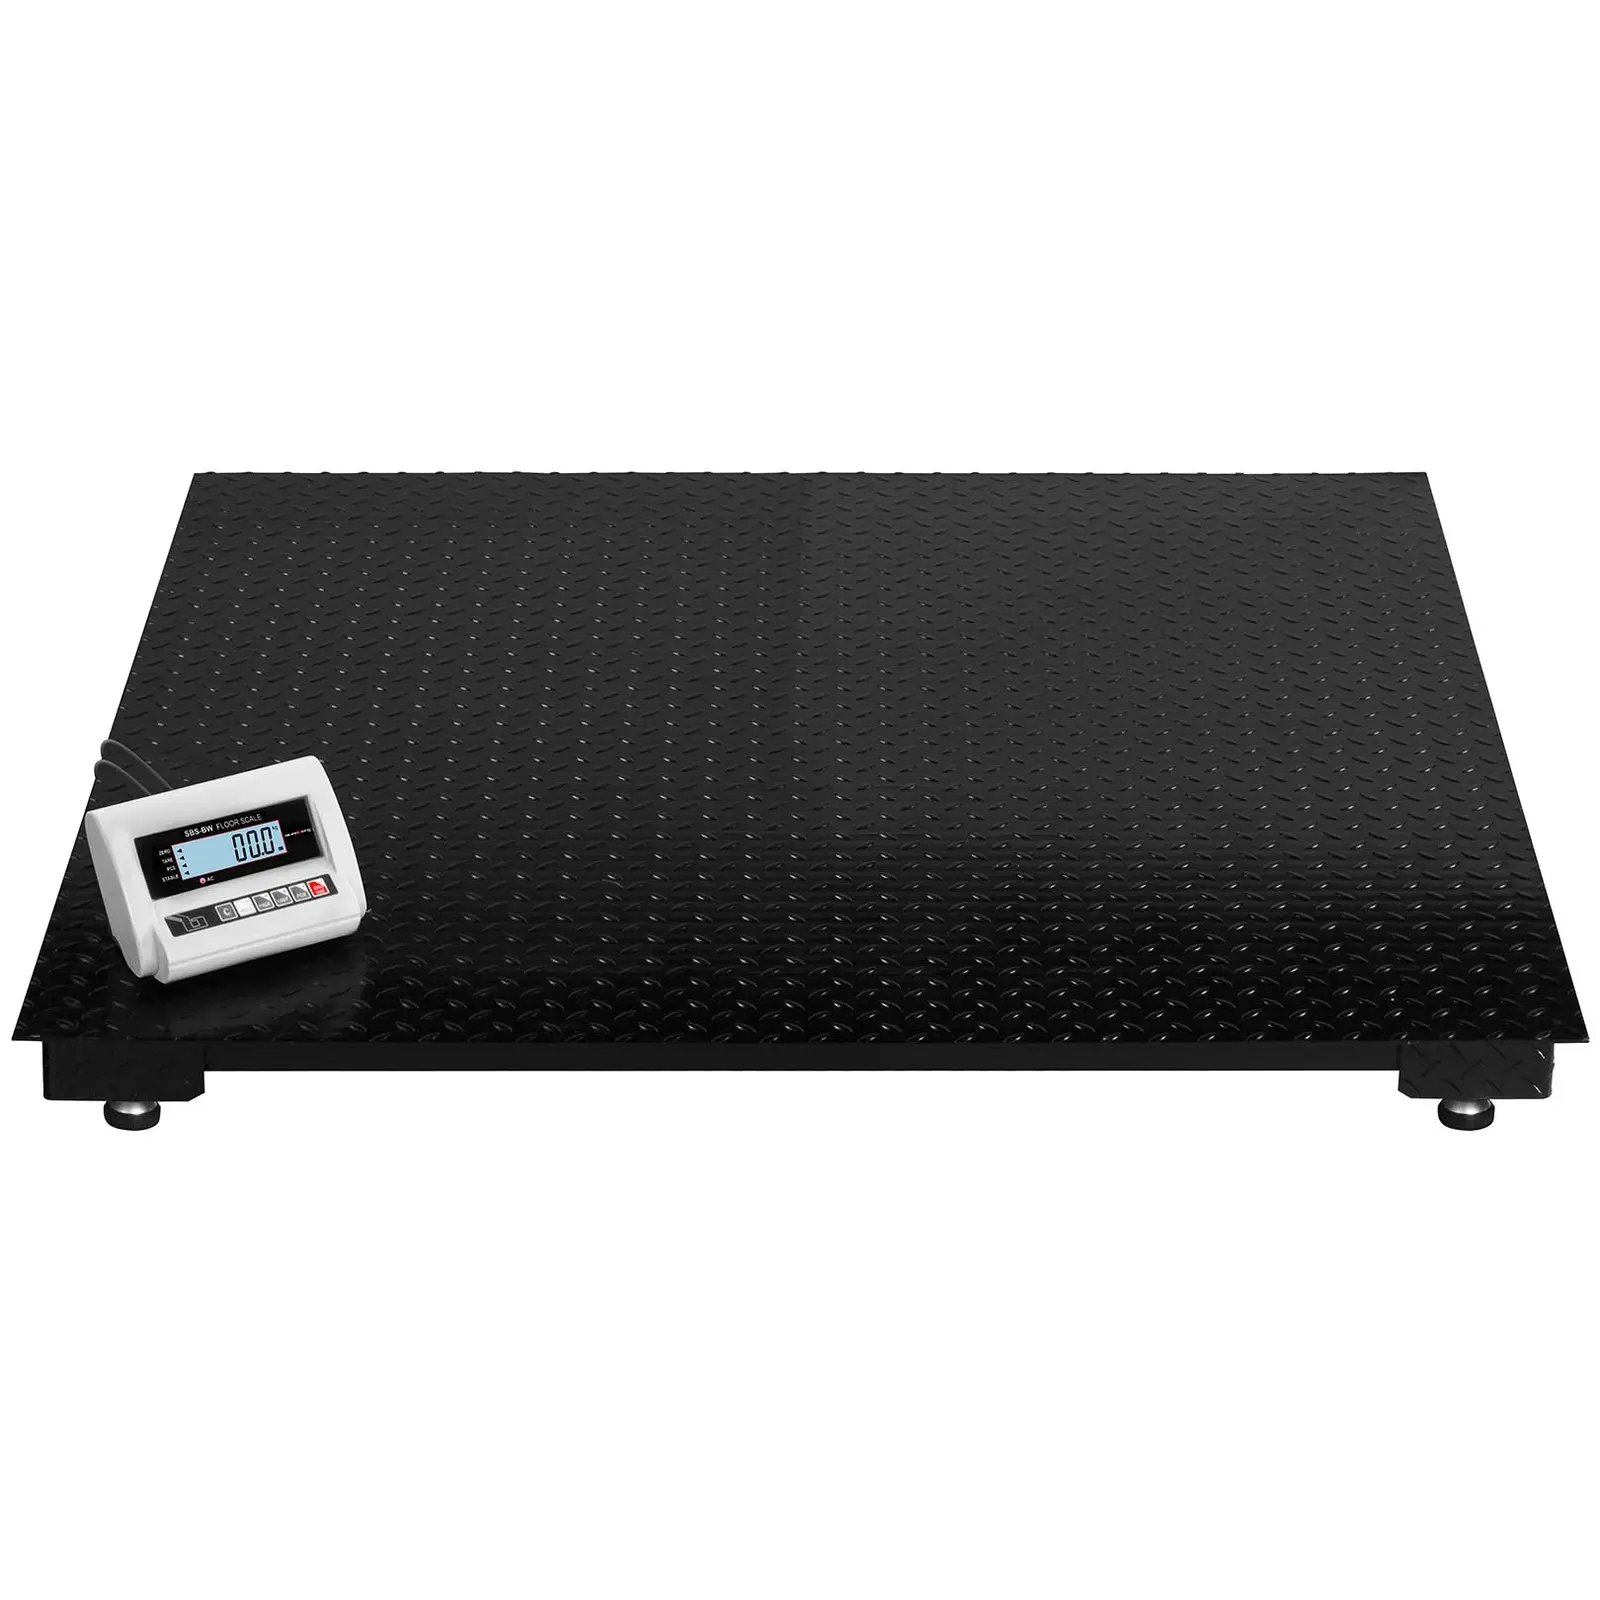 Podlahová váha -5 t / 2 kg -LCD